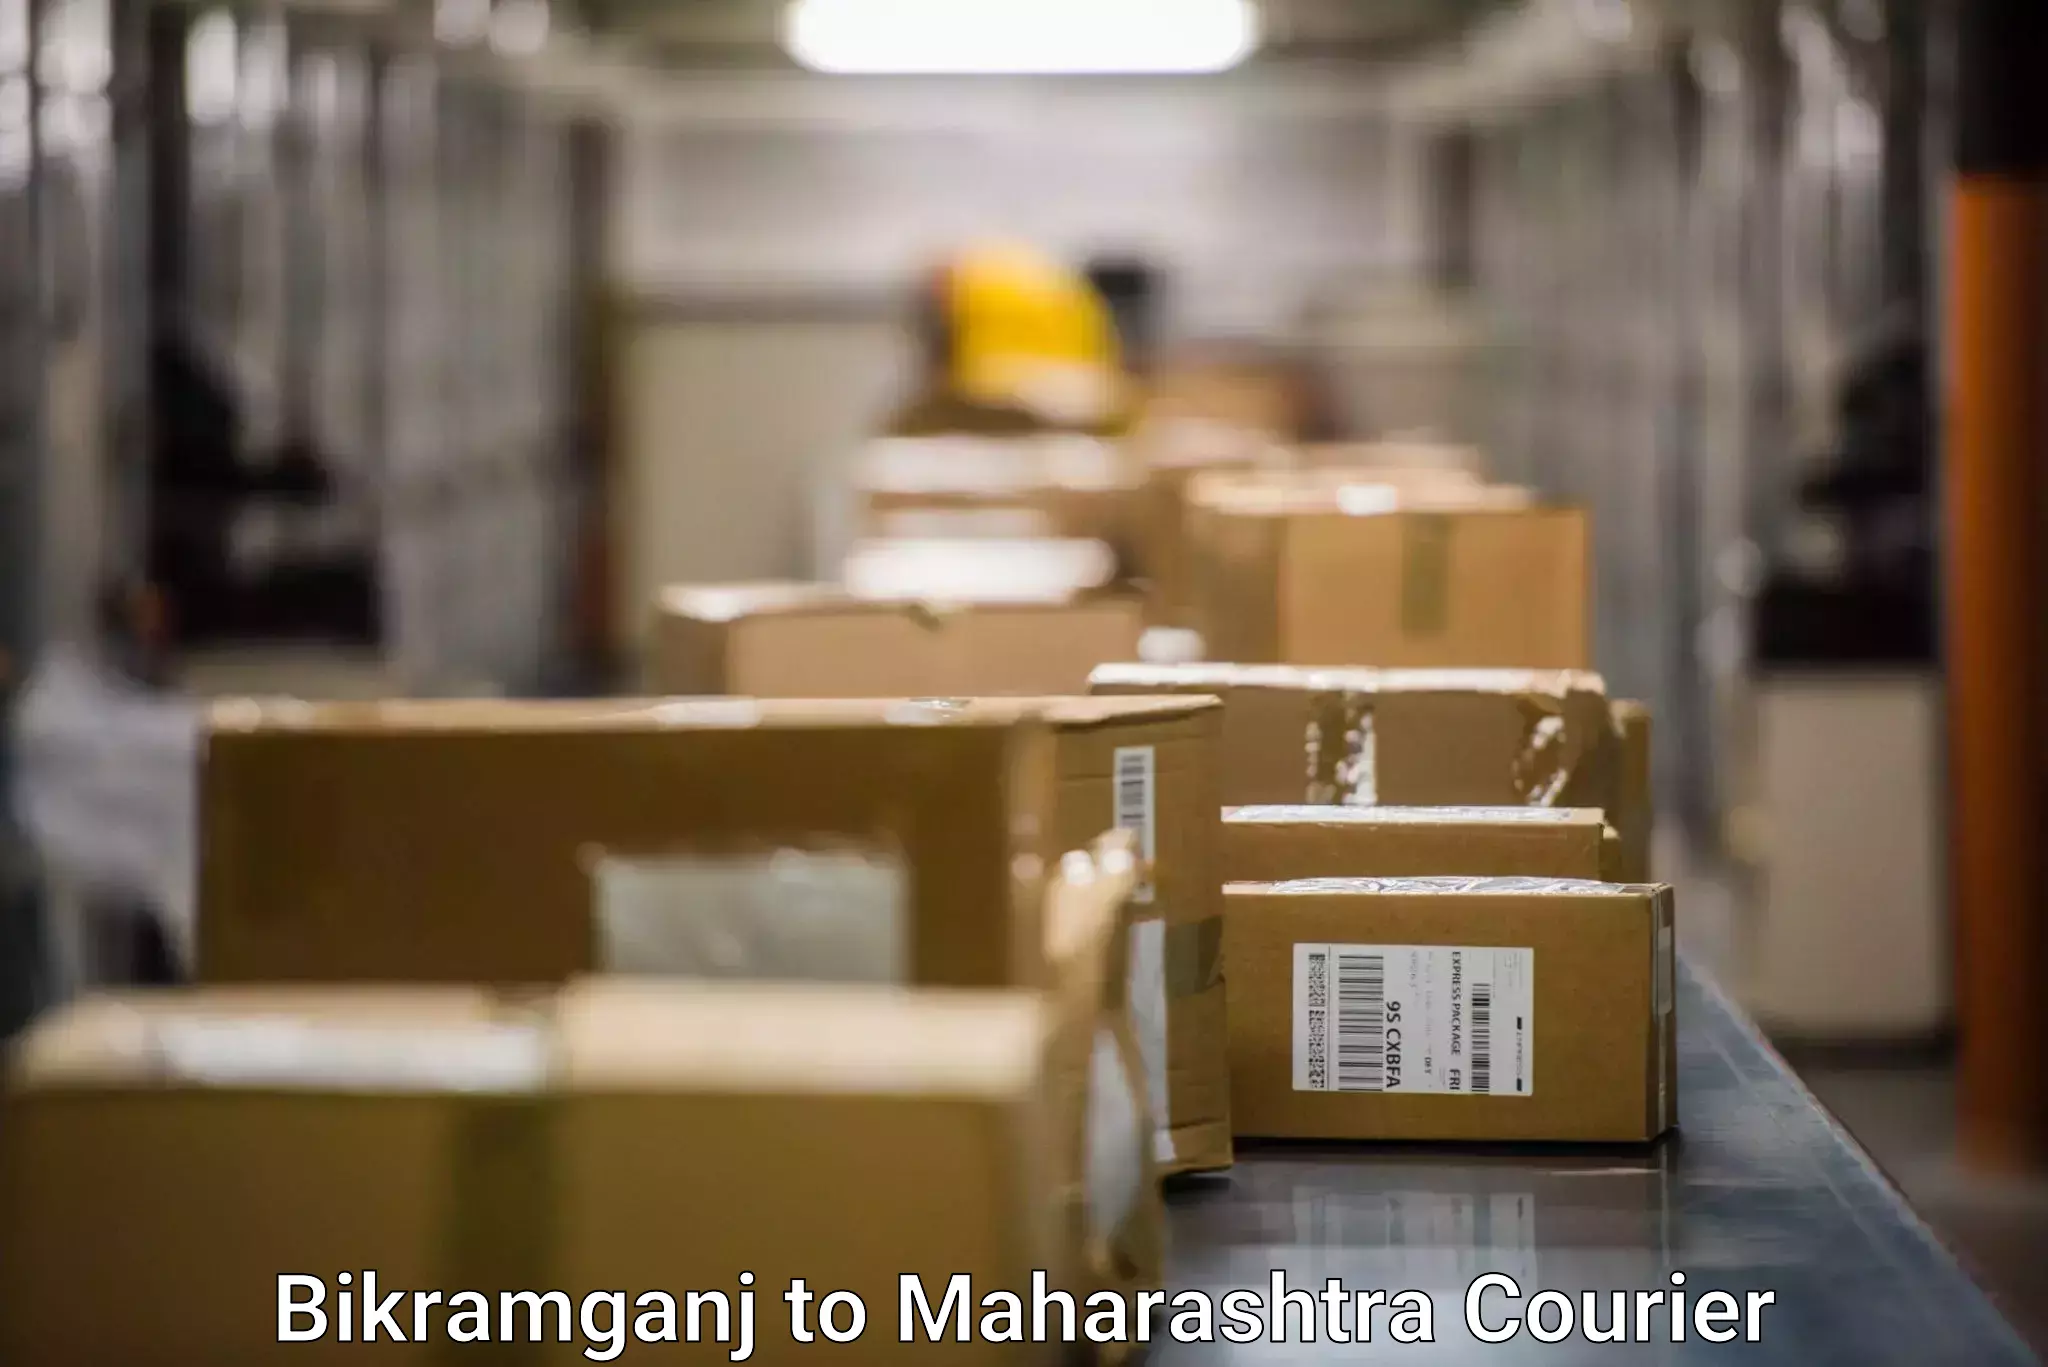 Small business couriers Bikramganj to Maharashtra